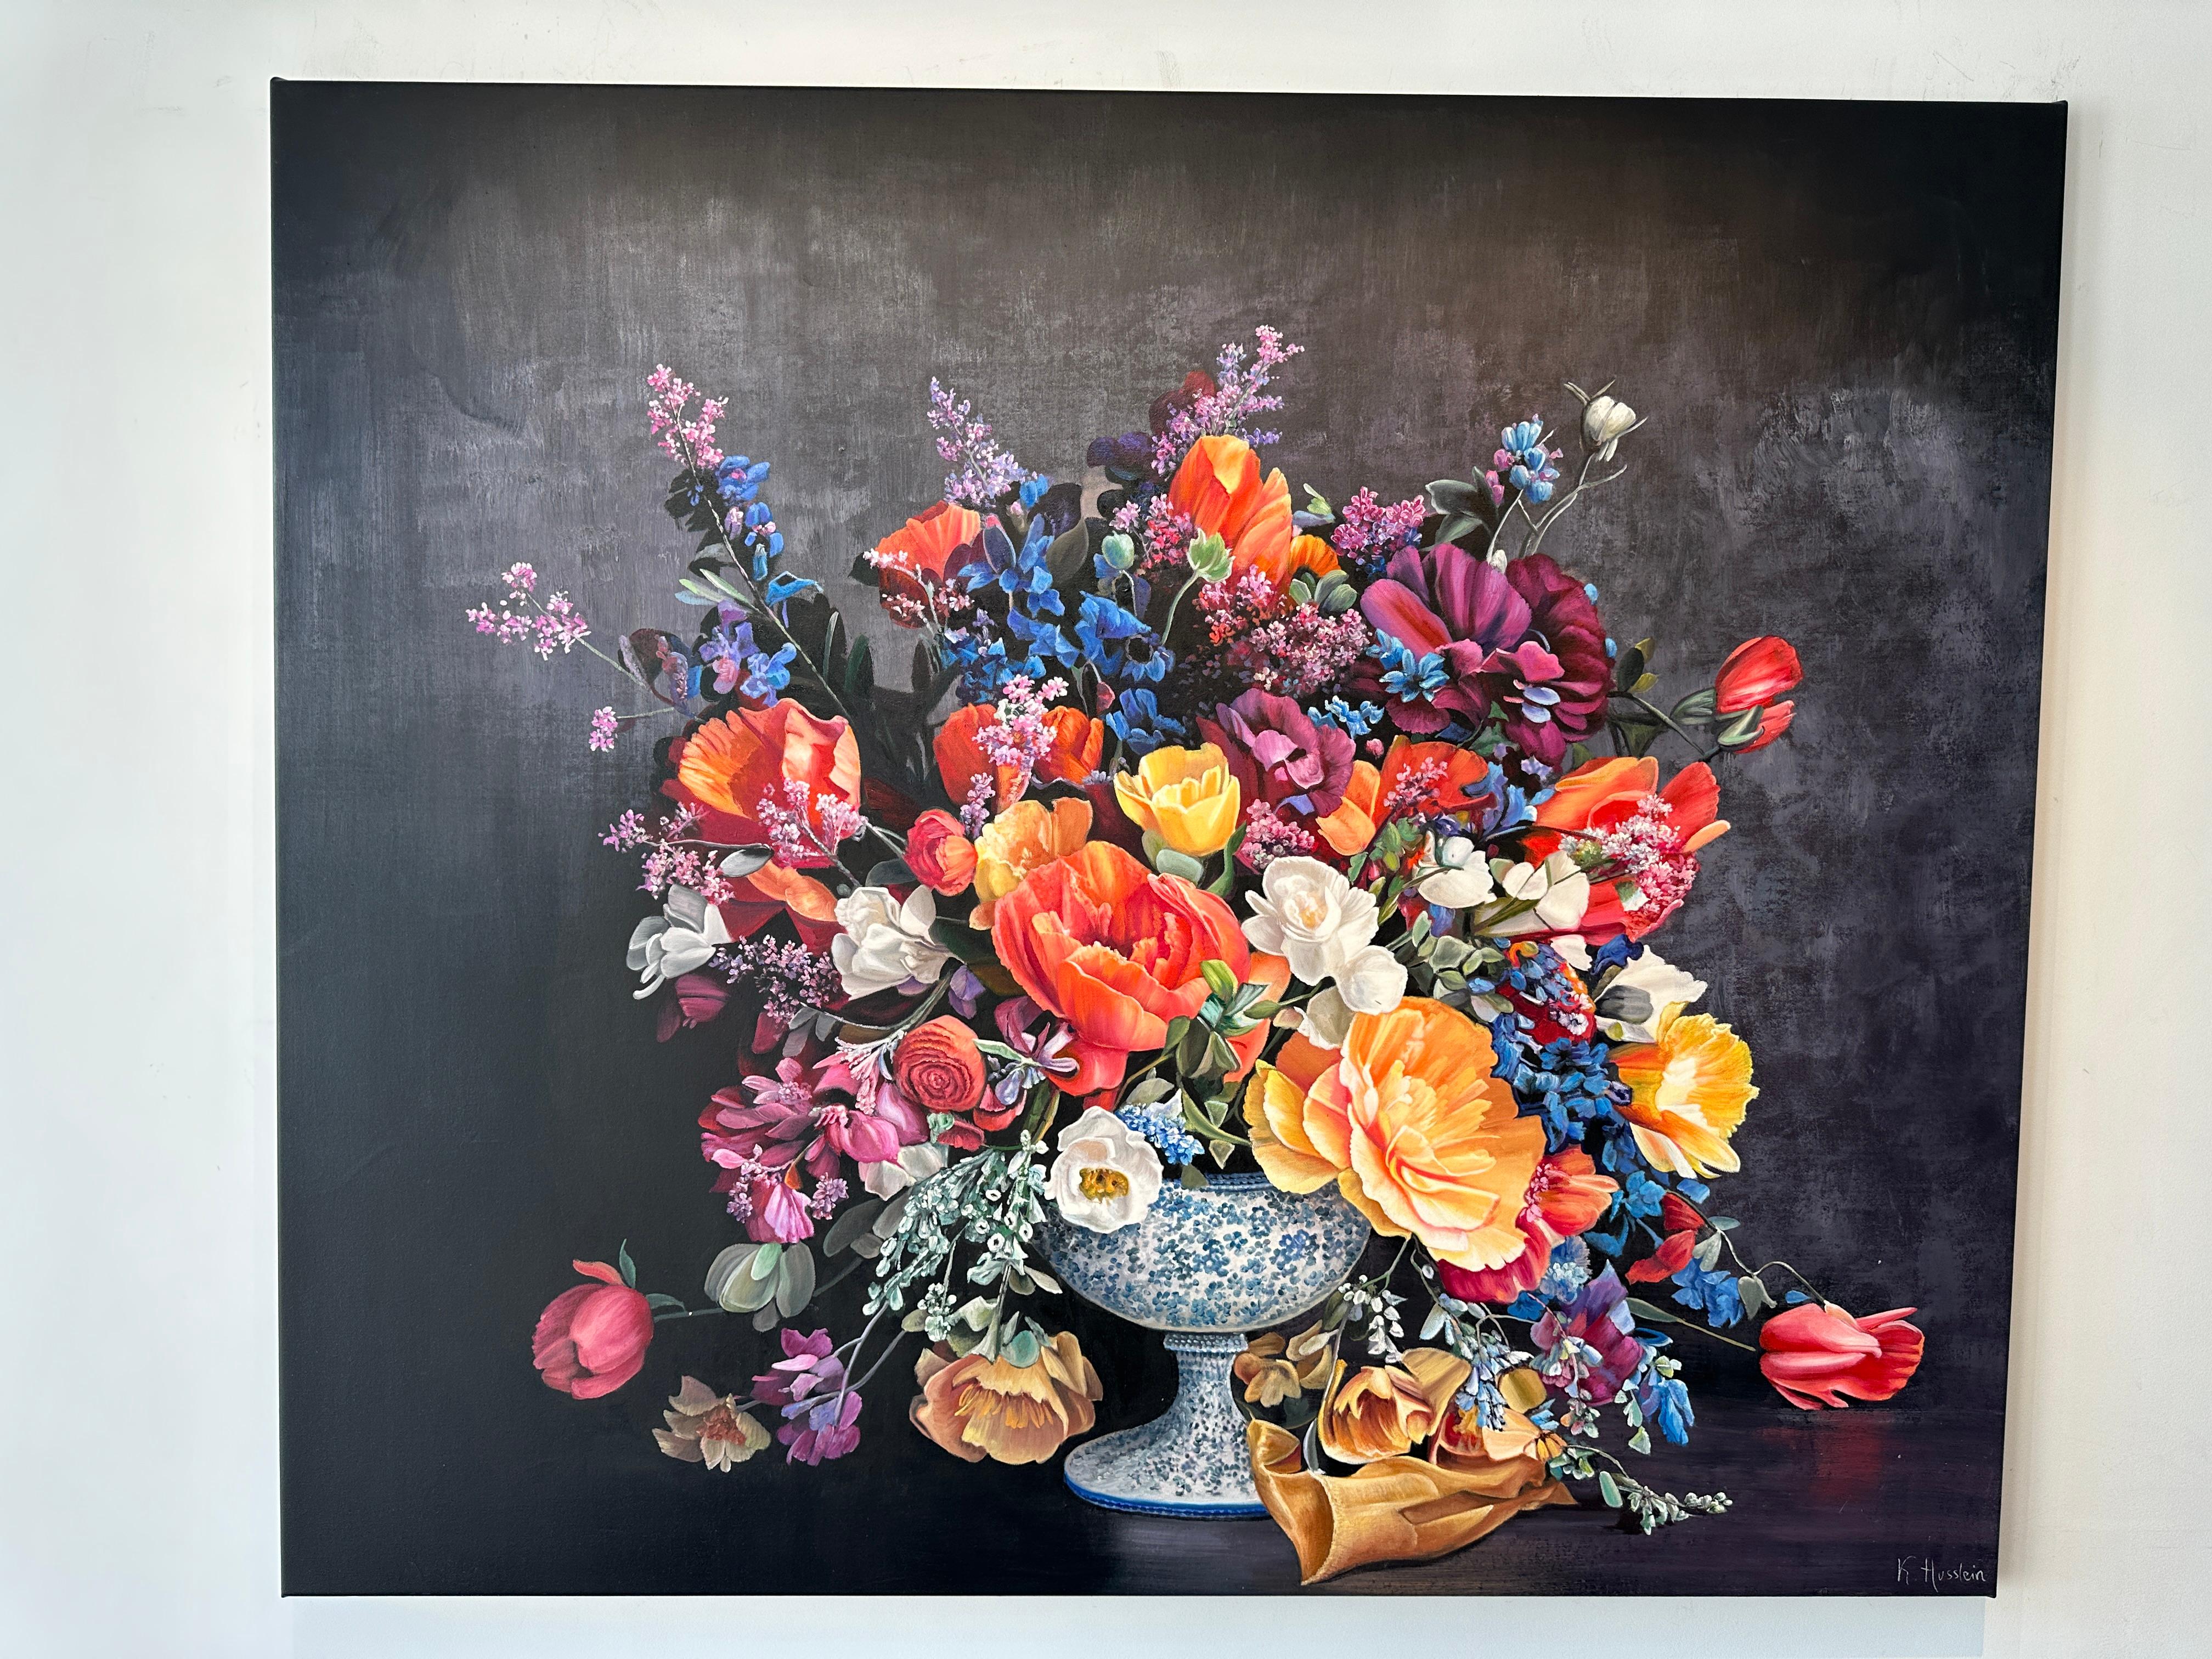 Dies ist ein schönes Ölgemälde mit einer Reihe von Blumen in einer Vase vor einem dunklen Hintergrund.
Dieses brandneue Gemälde voller Eleganz und zeitloser Eleganz erinnert an die Gemälde alter Meister.
Die botanischen Gemälde von Katharina